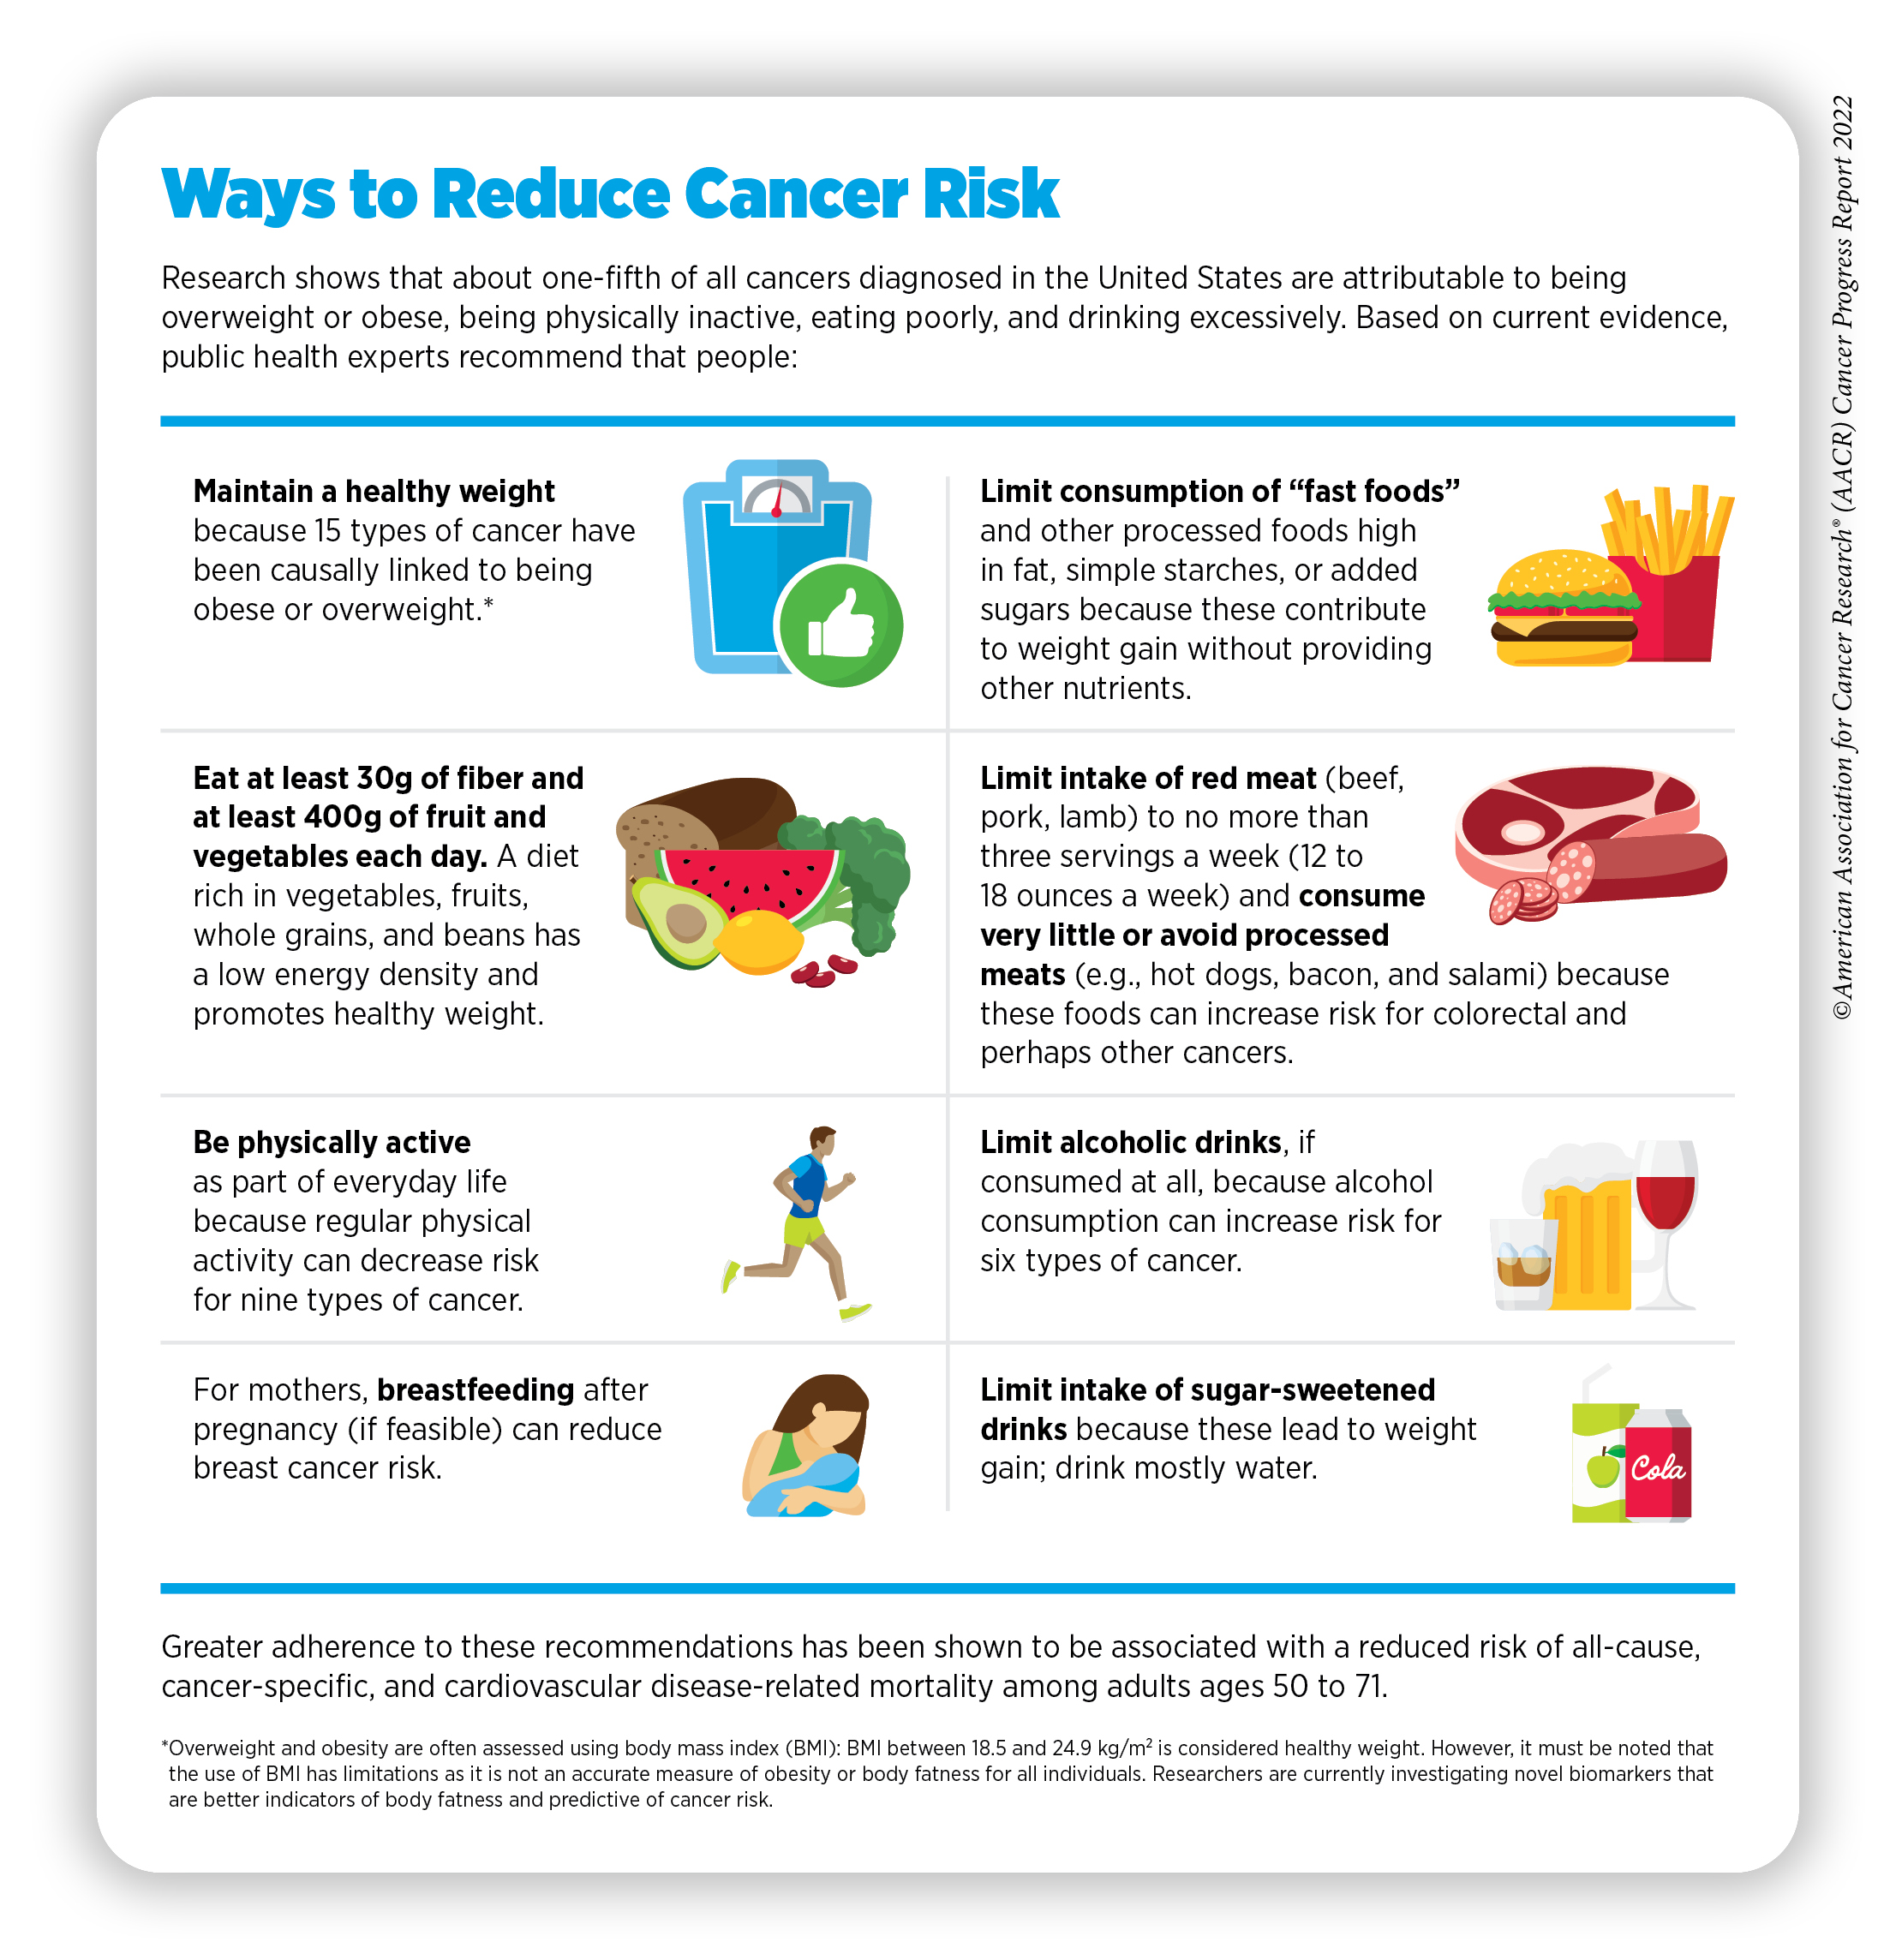 Preventing Cancer: Risk Factors